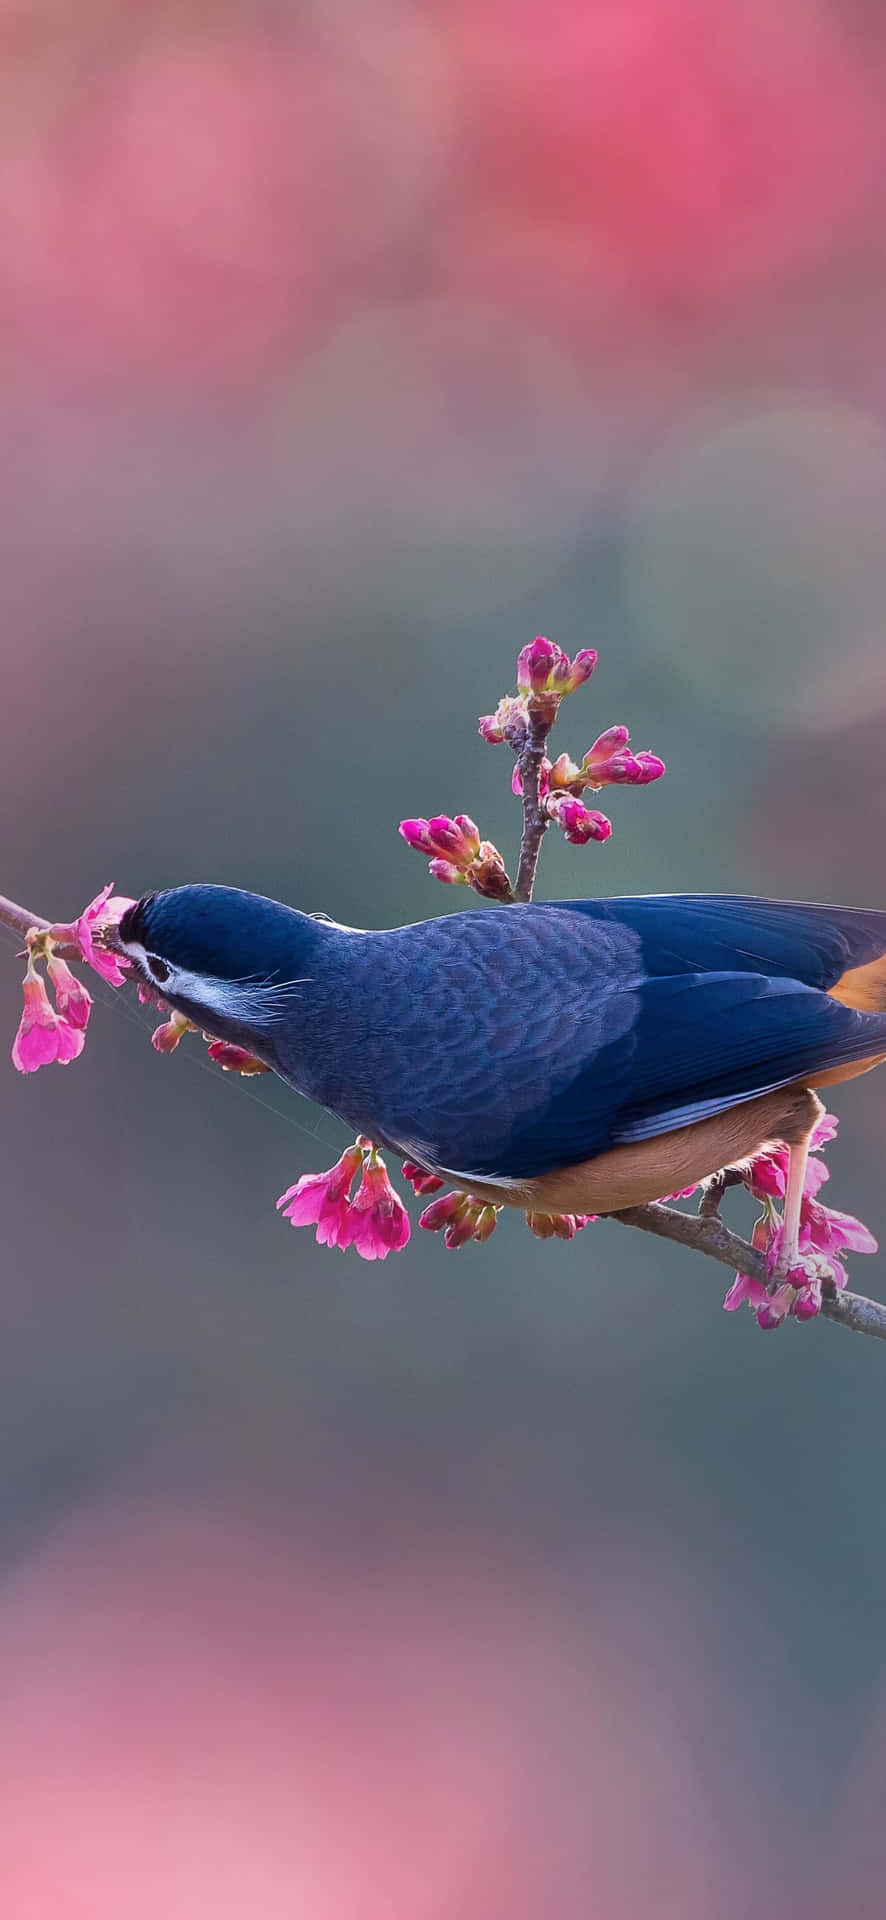 Eastern Bluebird Perchedon Blossoming Branch Wallpaper